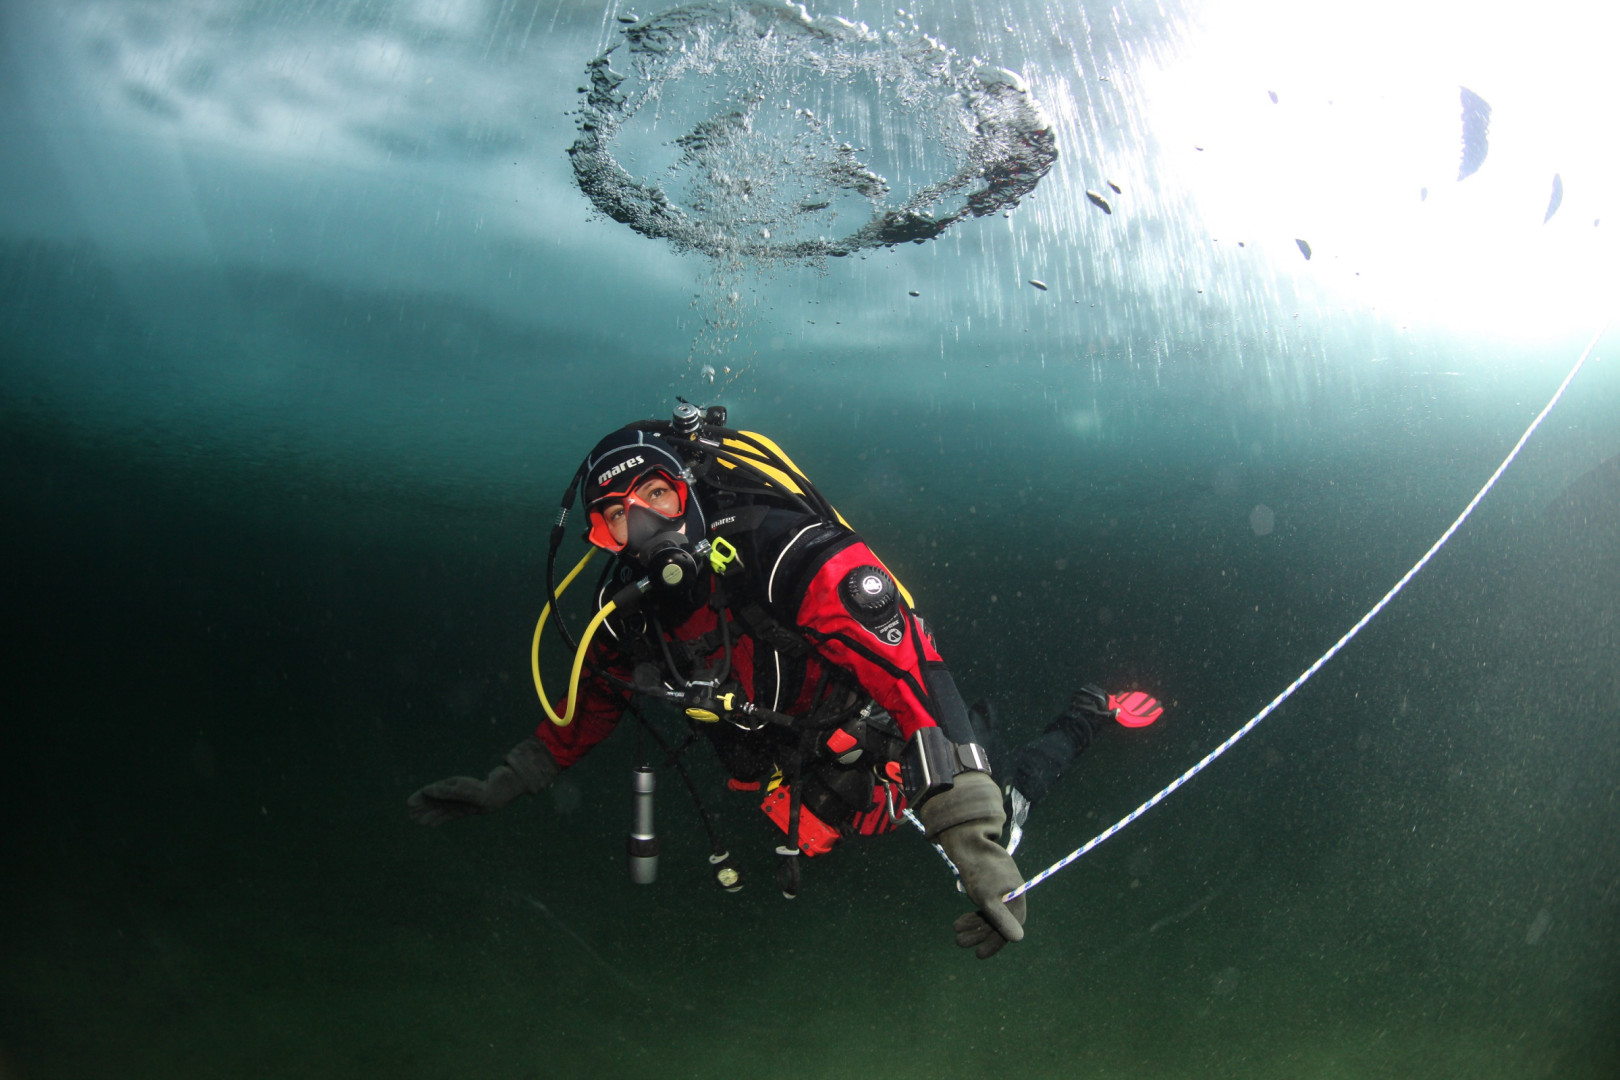 Второе погружение подводного исследовательского отряда Русского географического общества на полюсе холода Северного полушария Земли (8-10 марта 2014 года)